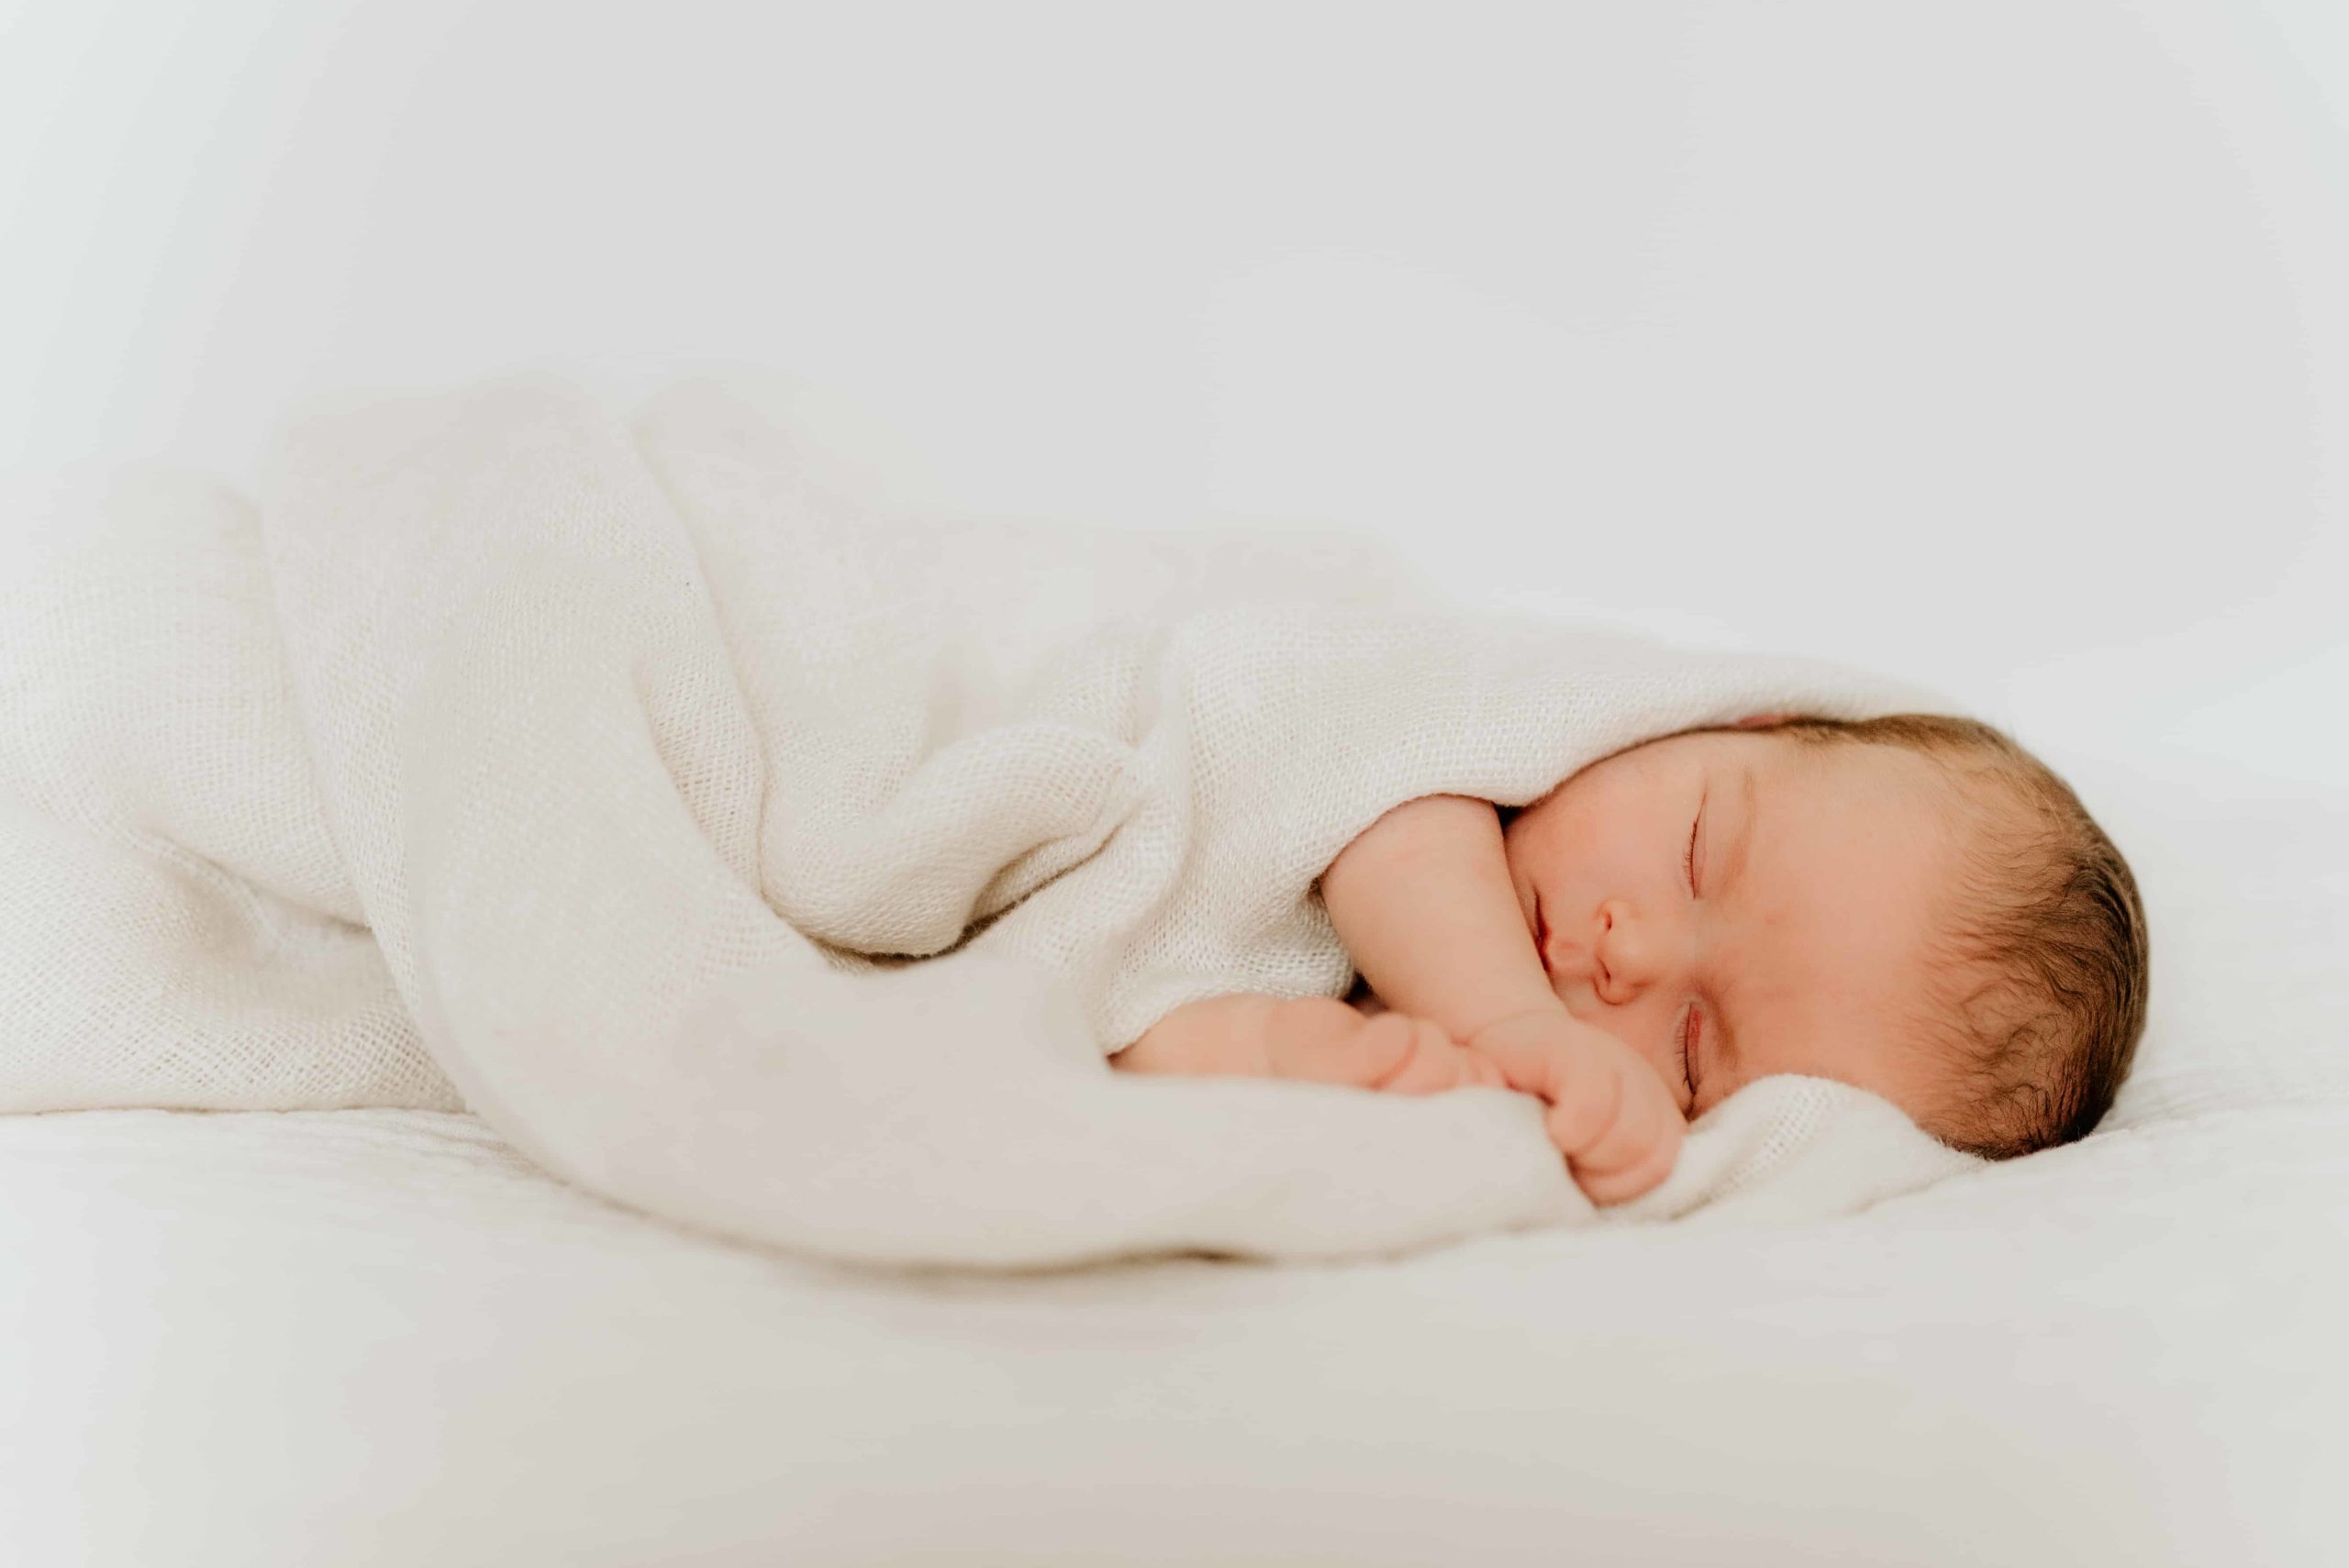 En nyfødt jentebaby ligger på siden og sover under naturlig nyfødtfotografering.